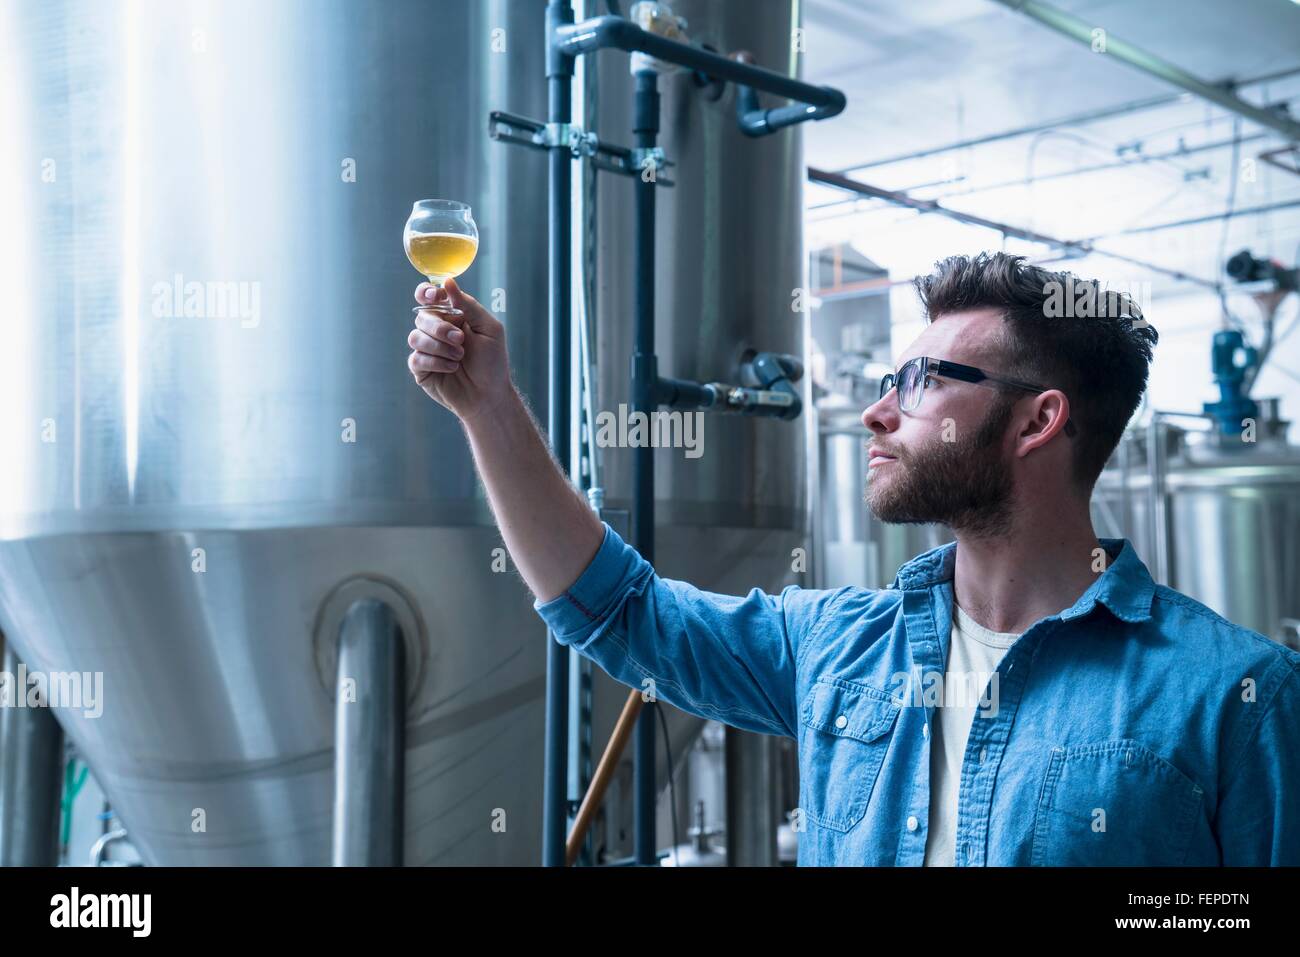 Jeune homme de brasserie disposant d'une verre de bière, contrôle qualité Banque D'Images